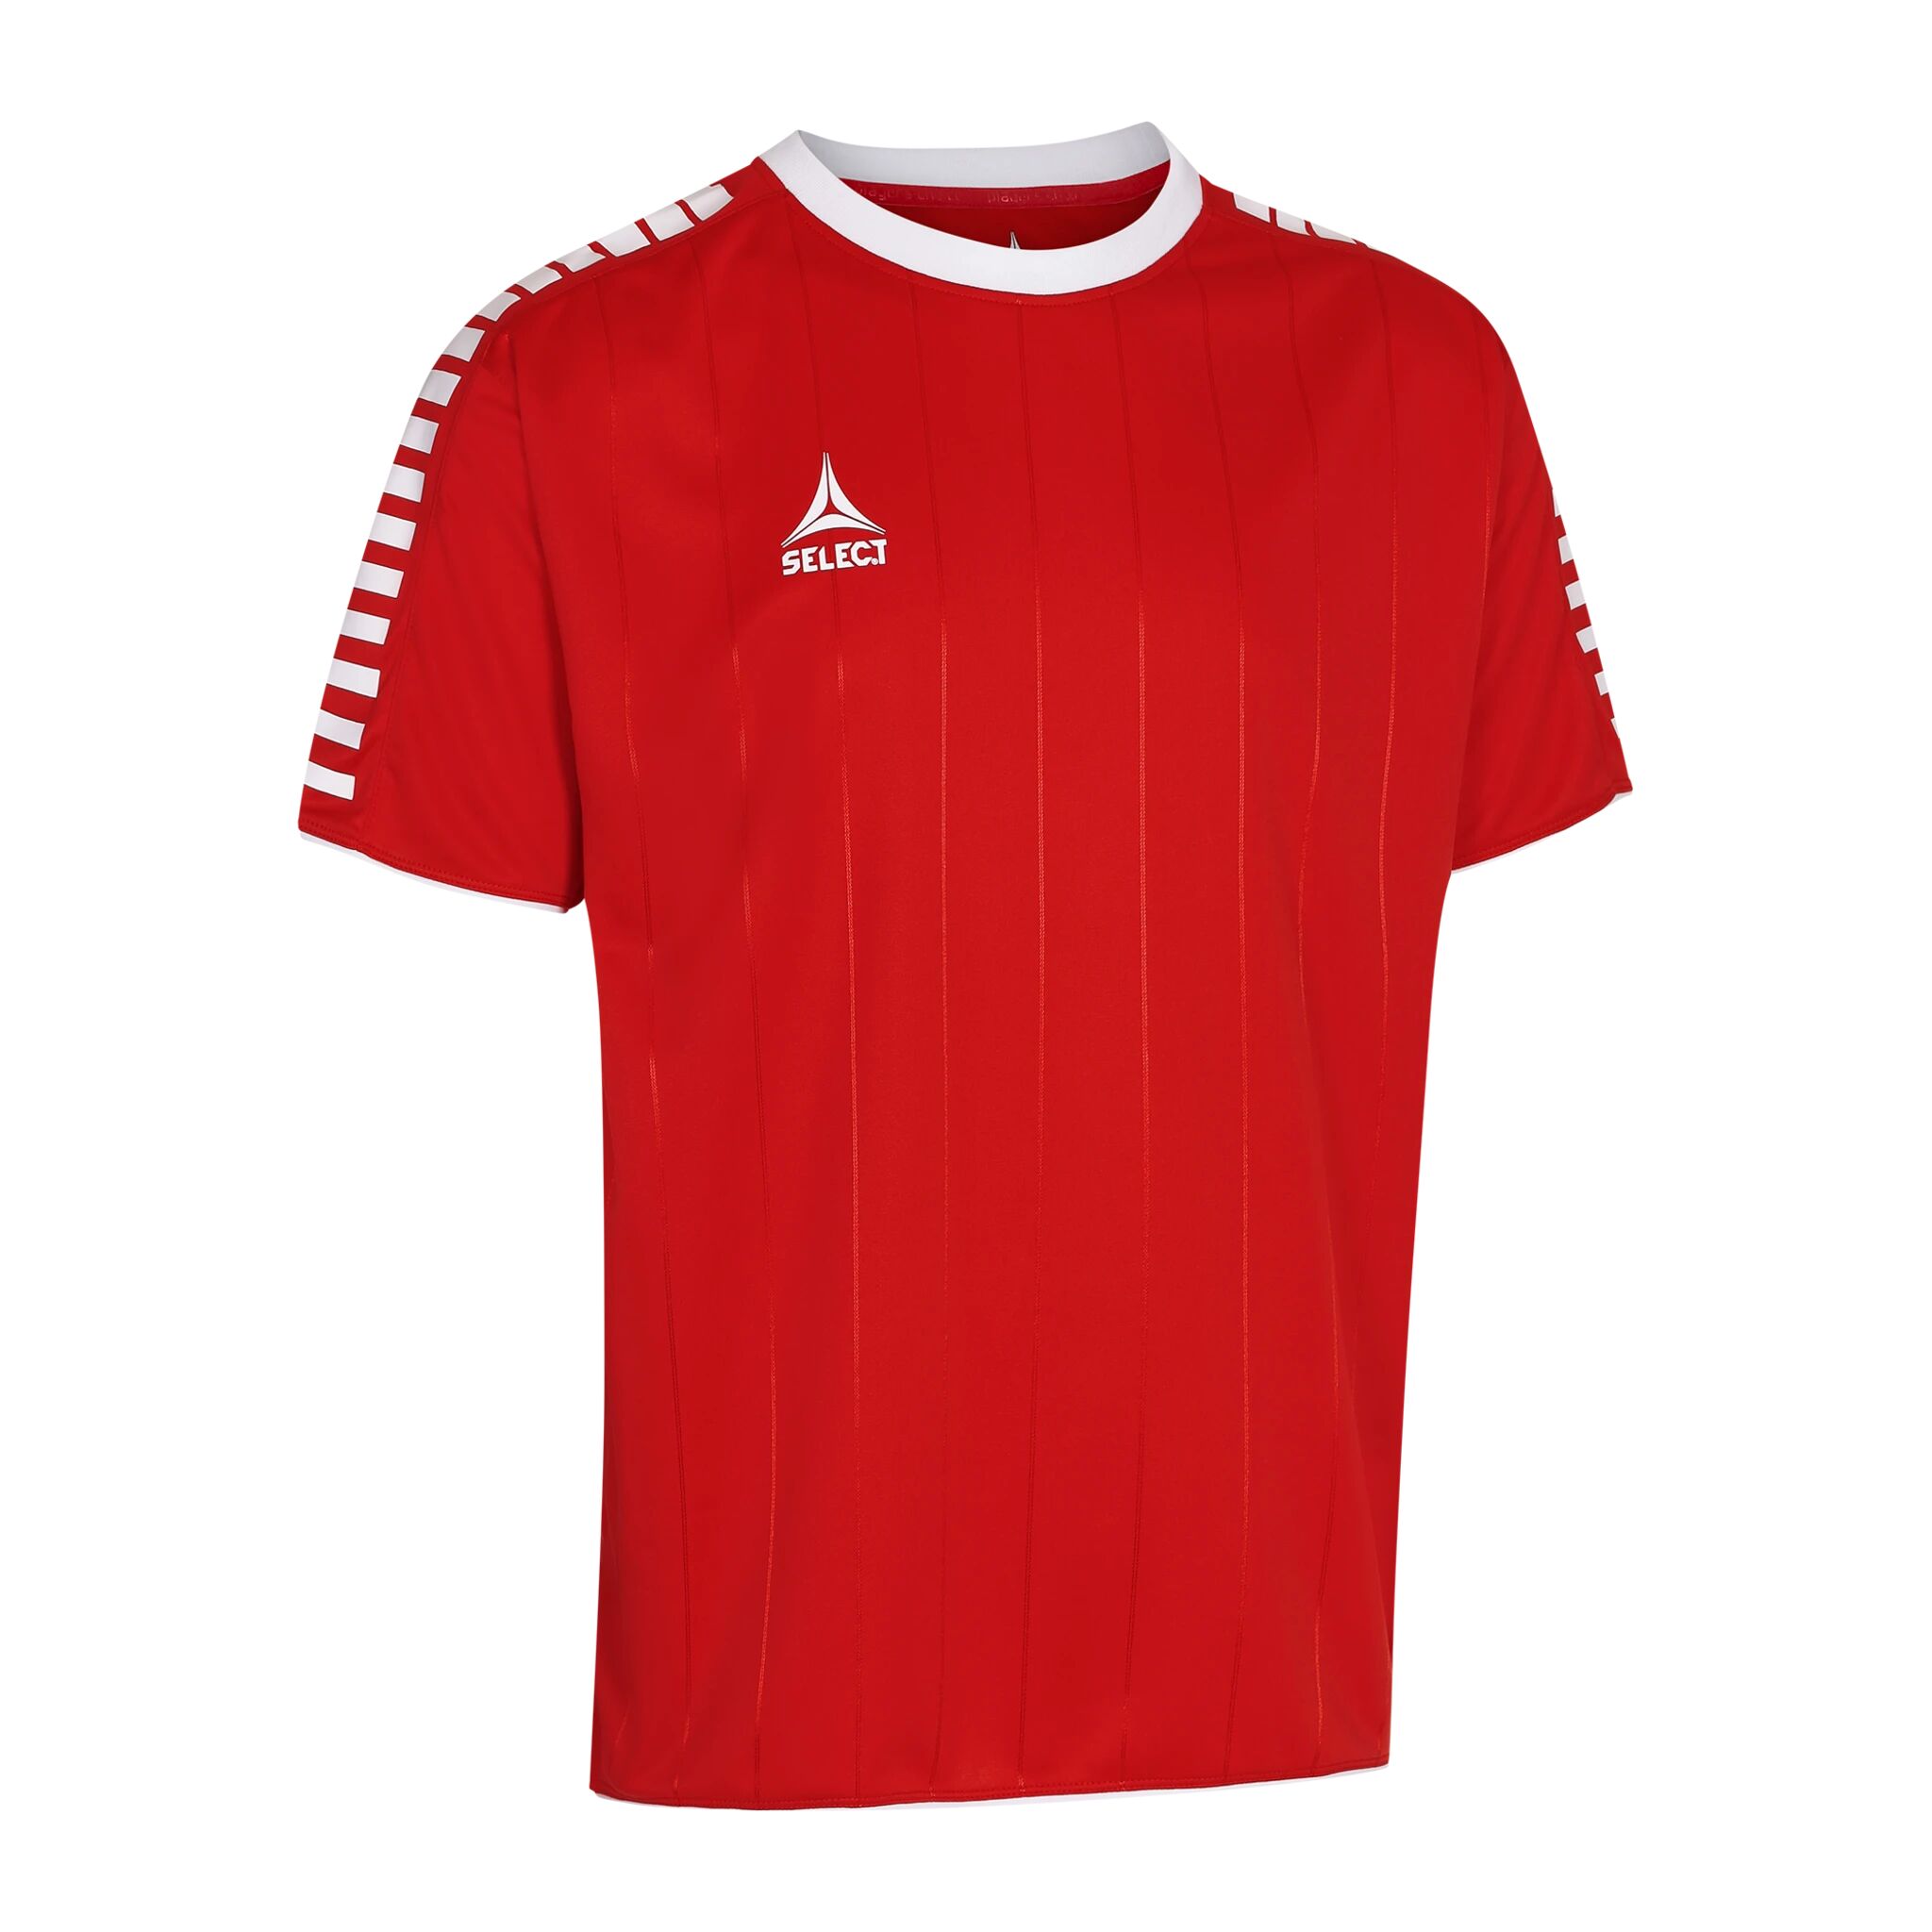 Select Player shirt S/S Argentina, fotballtrøye senior 152 RED